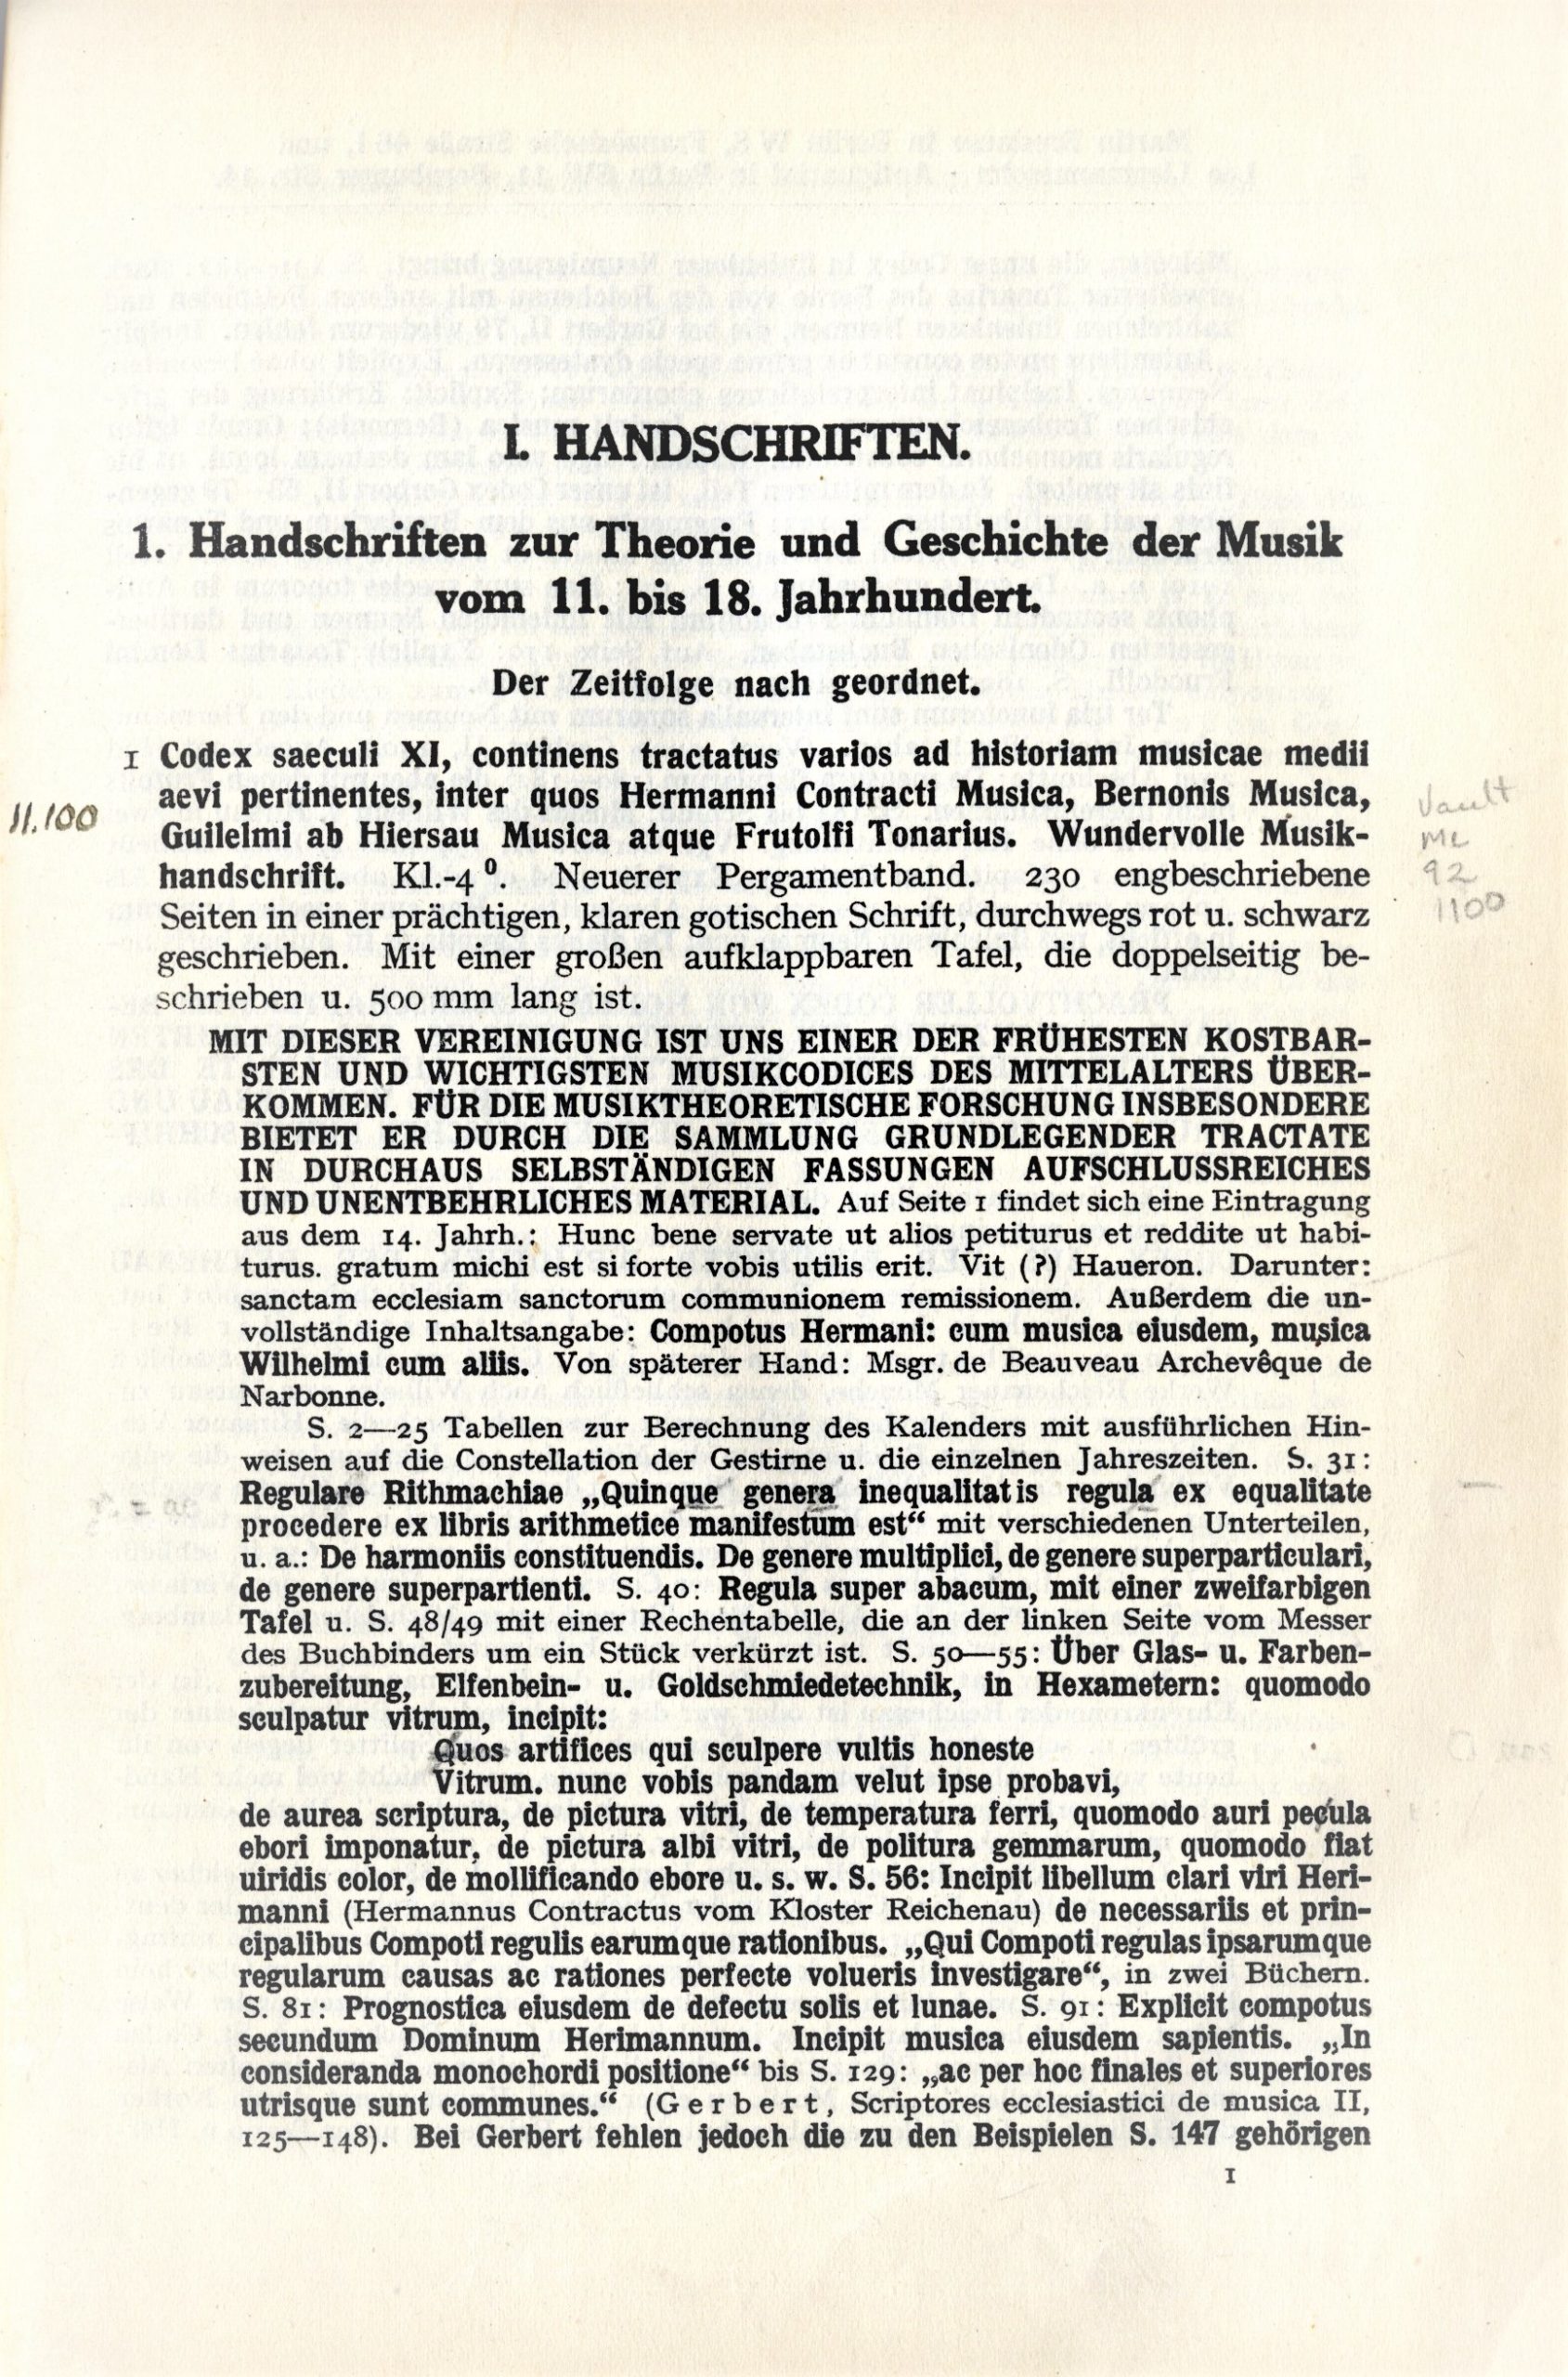 Wolffheim auction catalog vol 2, page 1